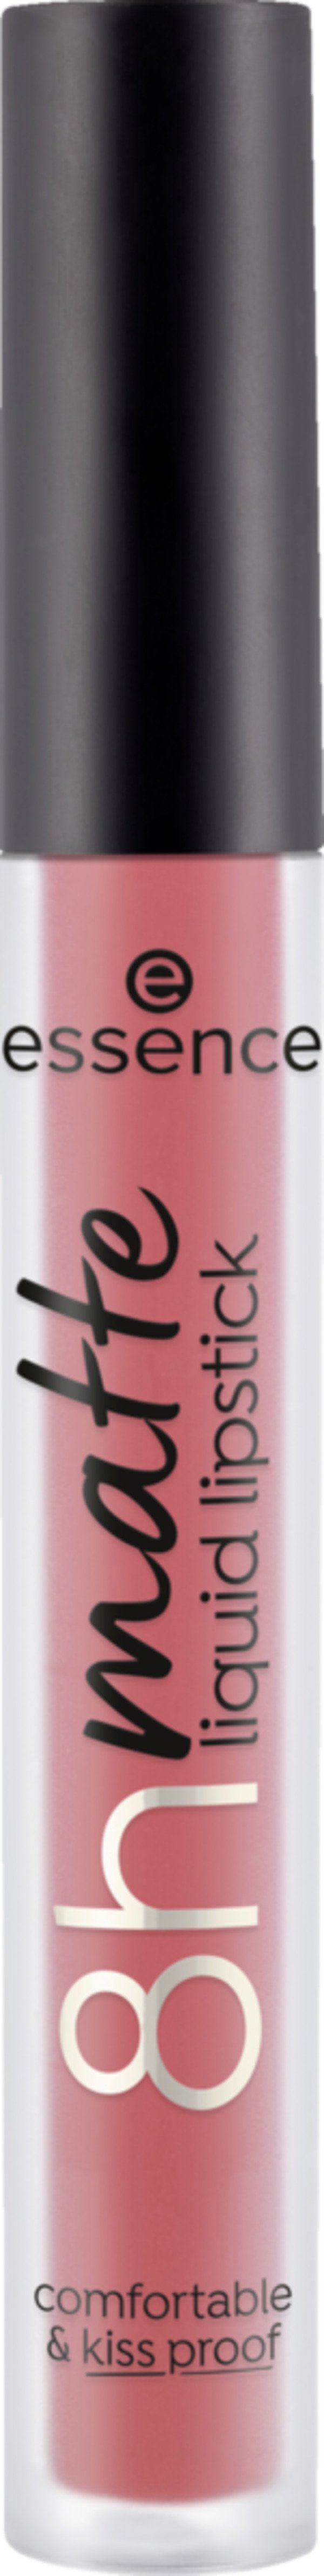 Bild 1 von essence 8h matte liquid lipstick 09 Fiery Red